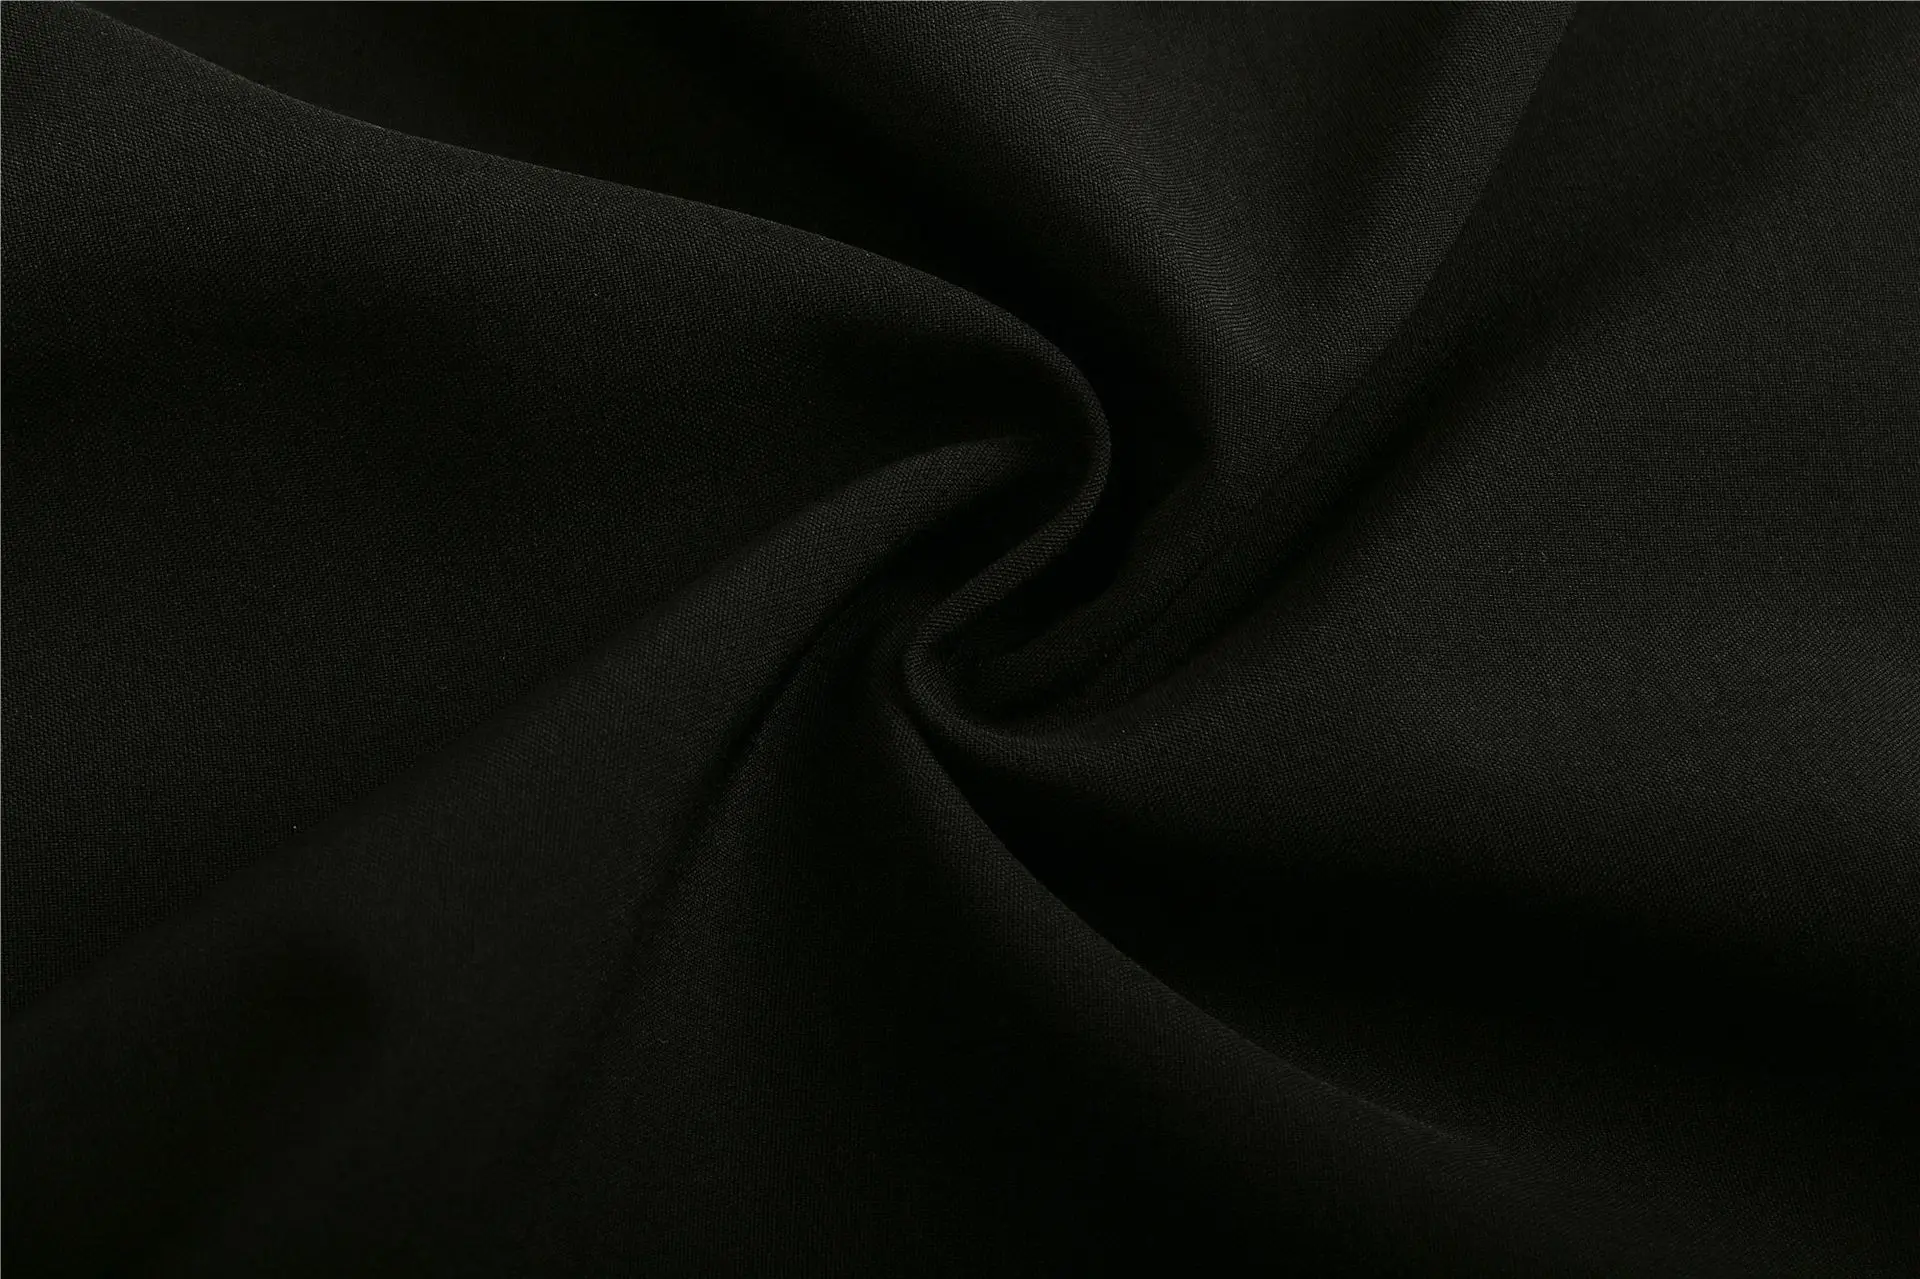 Модный прочный комбинезон для женщин без рукавов черный комбинезон женский Свободный Повседневный негабаритный верхняя одежда